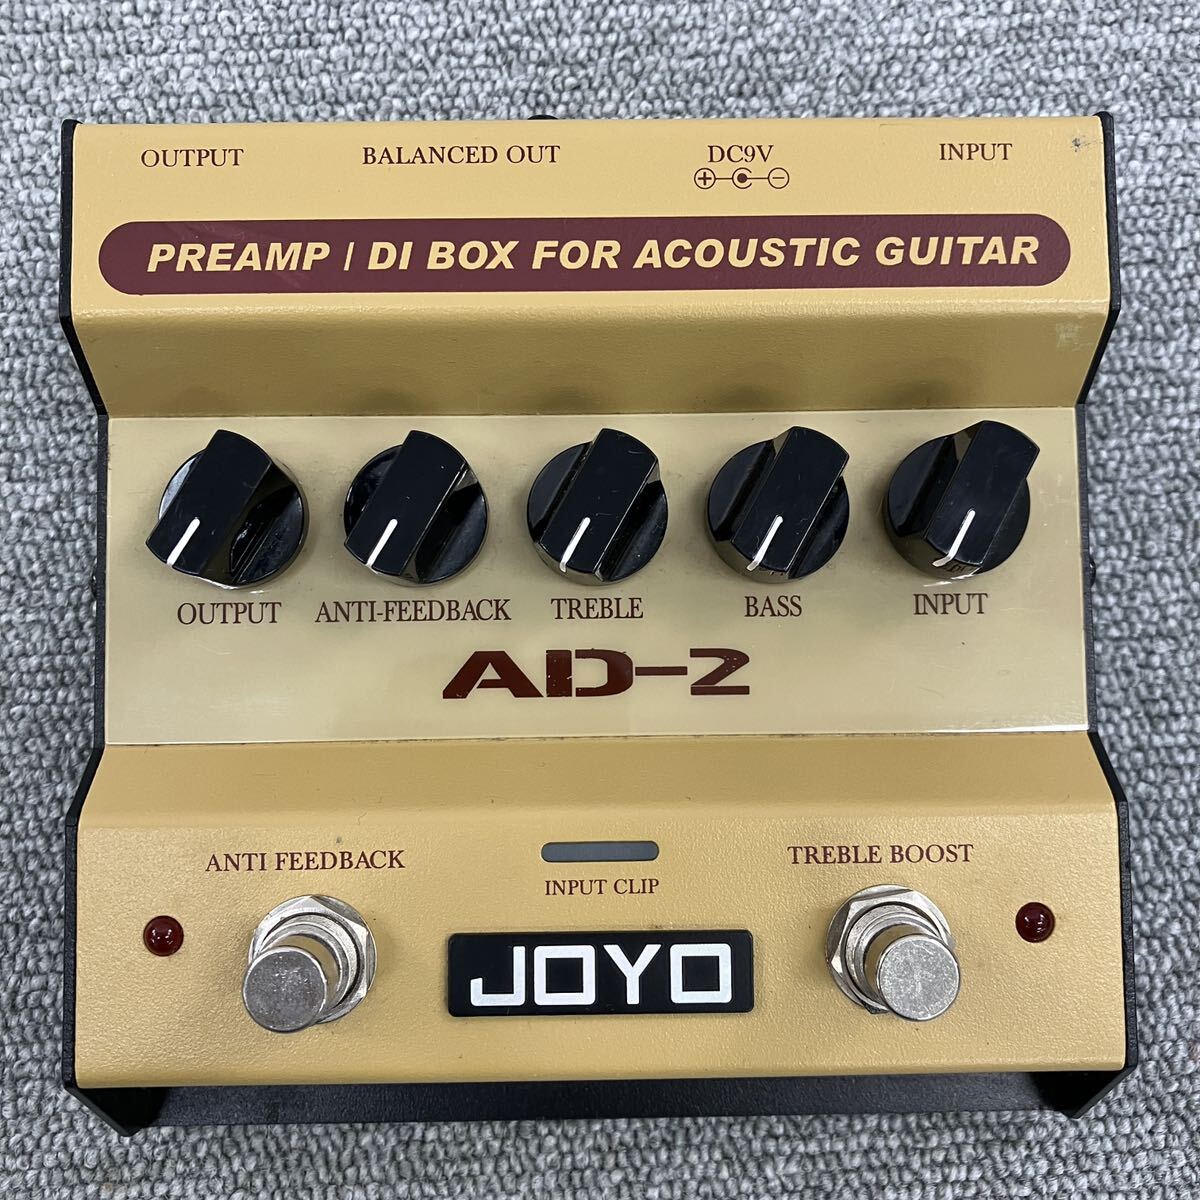 $【売り切り】JOYOジョーヨー エフェクター PREAMP DI BOX アコースティックギター用プリアンプ AD-2 音出し確認済み ギター用機材の画像1